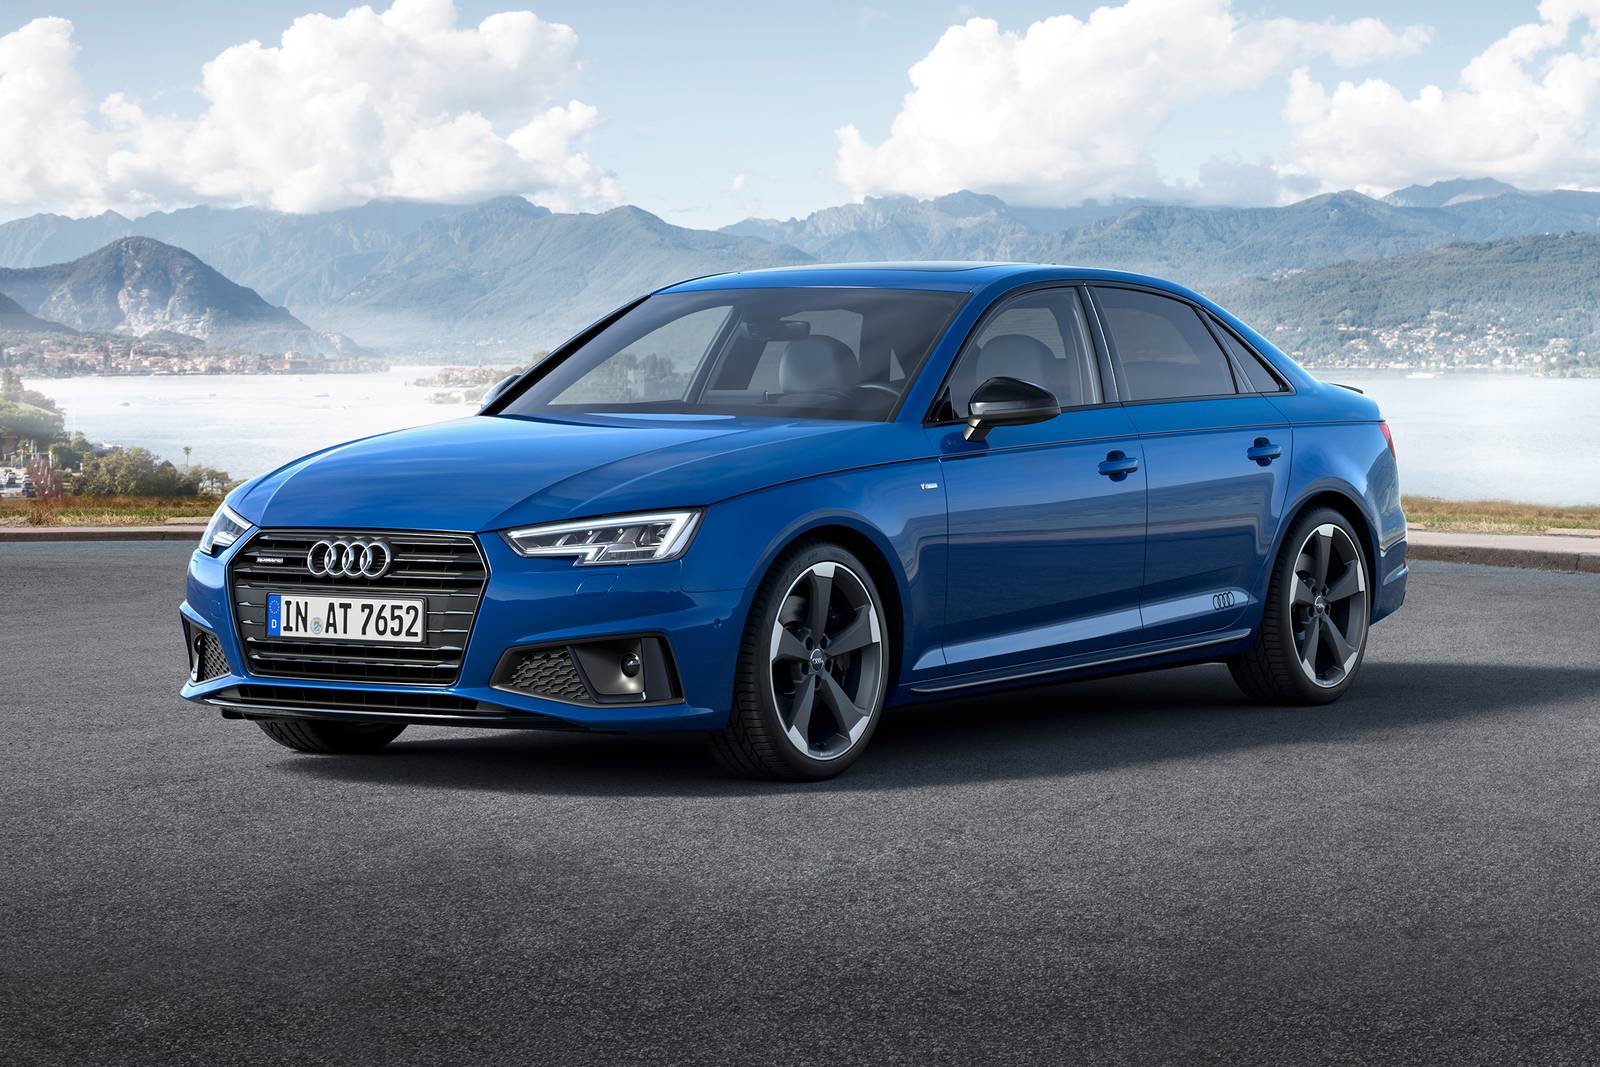 2019 Audi A4 Review & Ratings | Edmunds